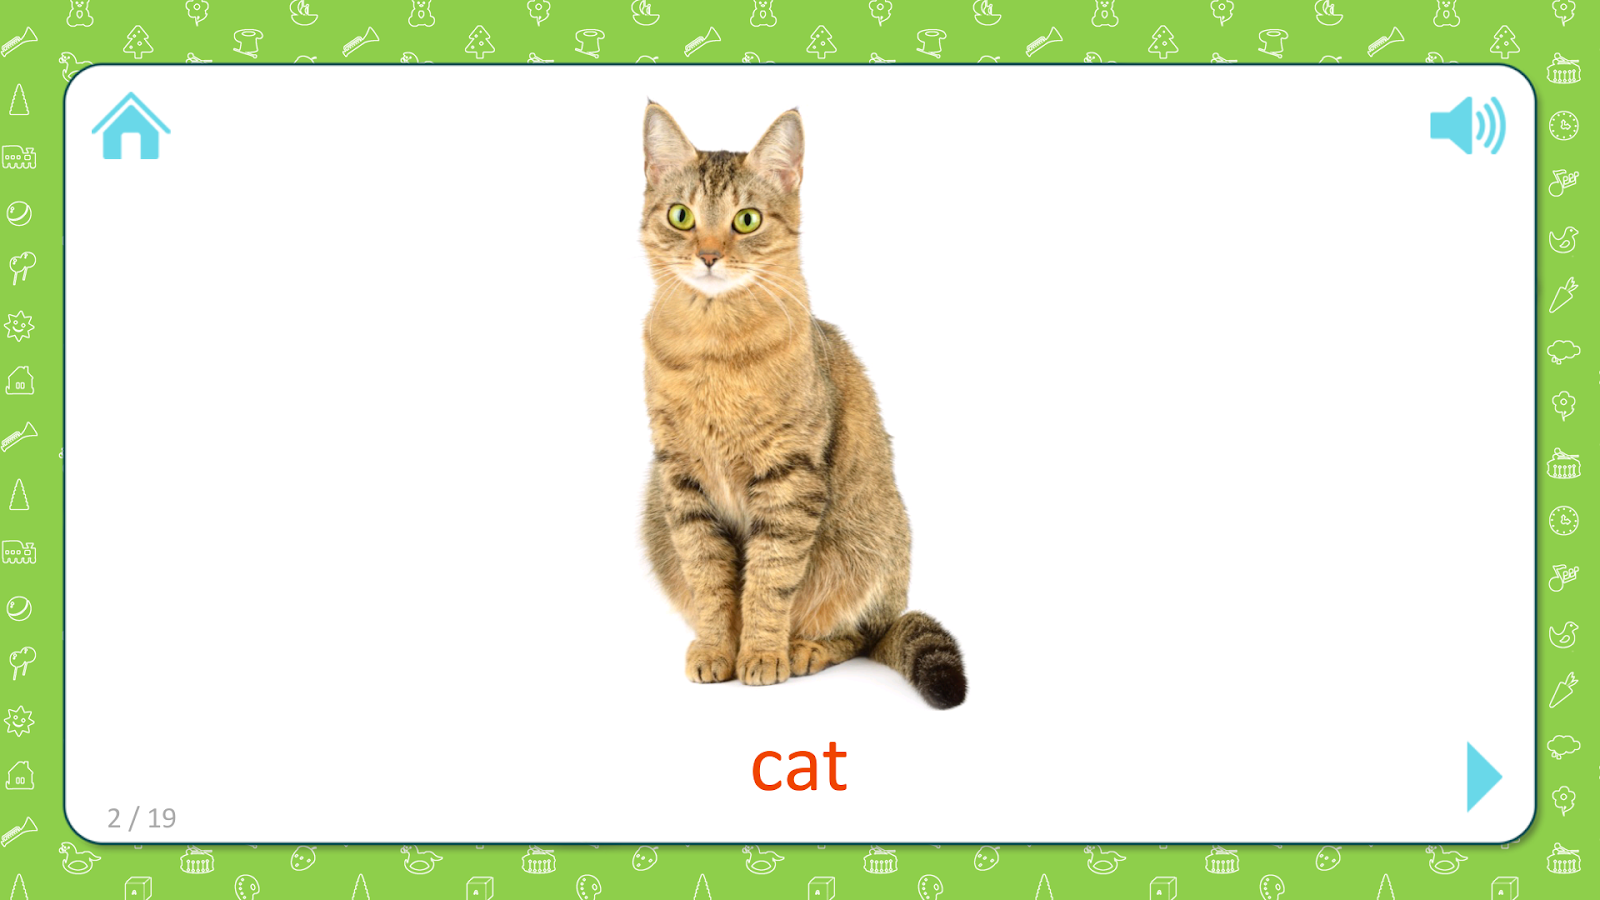 Кот на английском языке перевод. Кошка карточка для детей. Cat карточка по английскому. Карточка на английском языке кошка. Кошка на английском языке для детей.